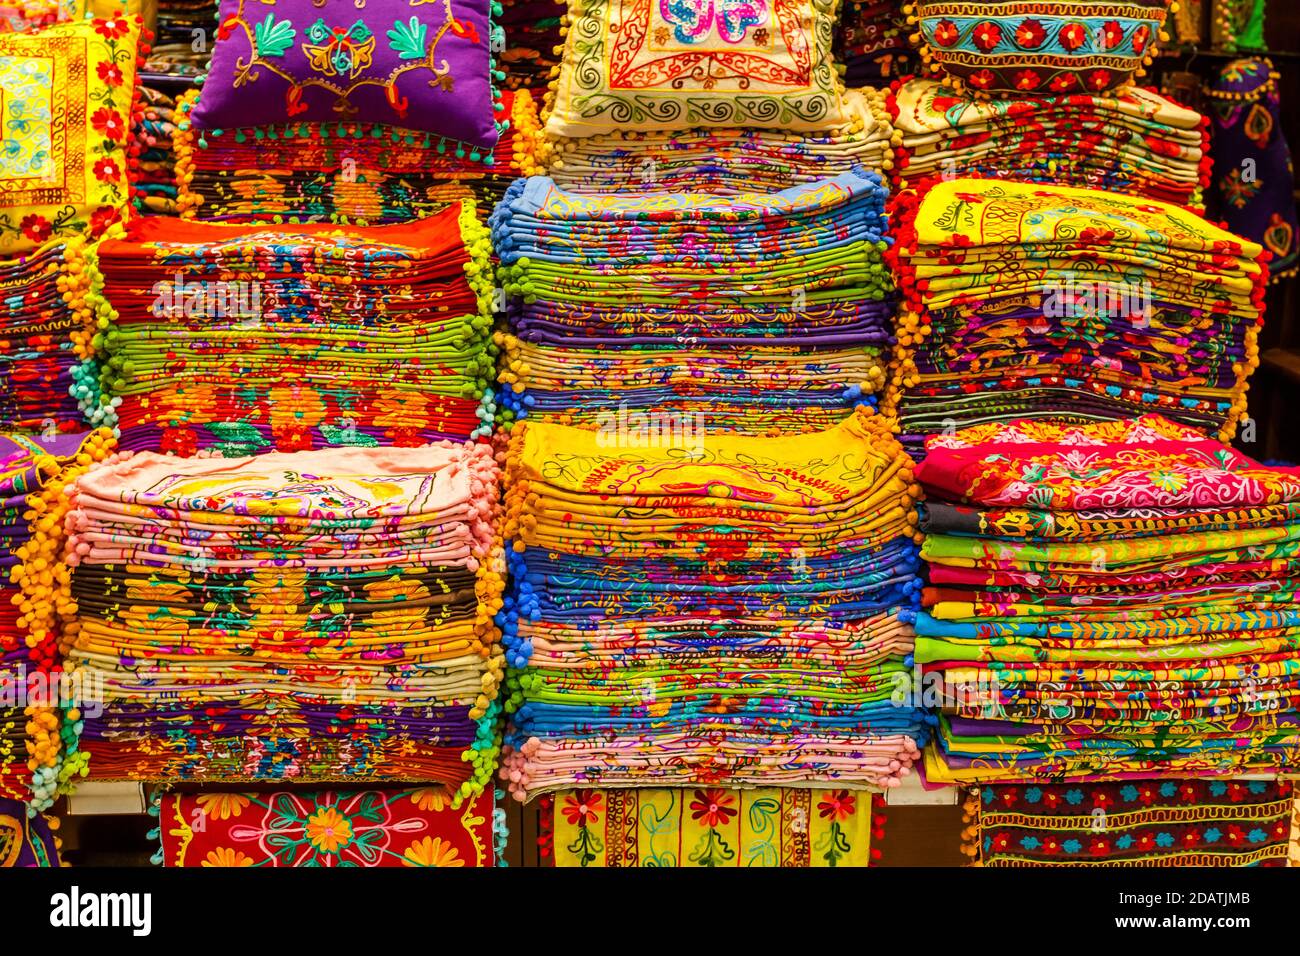 Taies d'oreiller à vendre dans le Grand Bazar Istanbul, Turquie, Kapali Carsi. Produits artisanaux arabes et turcs. Banque D'Images